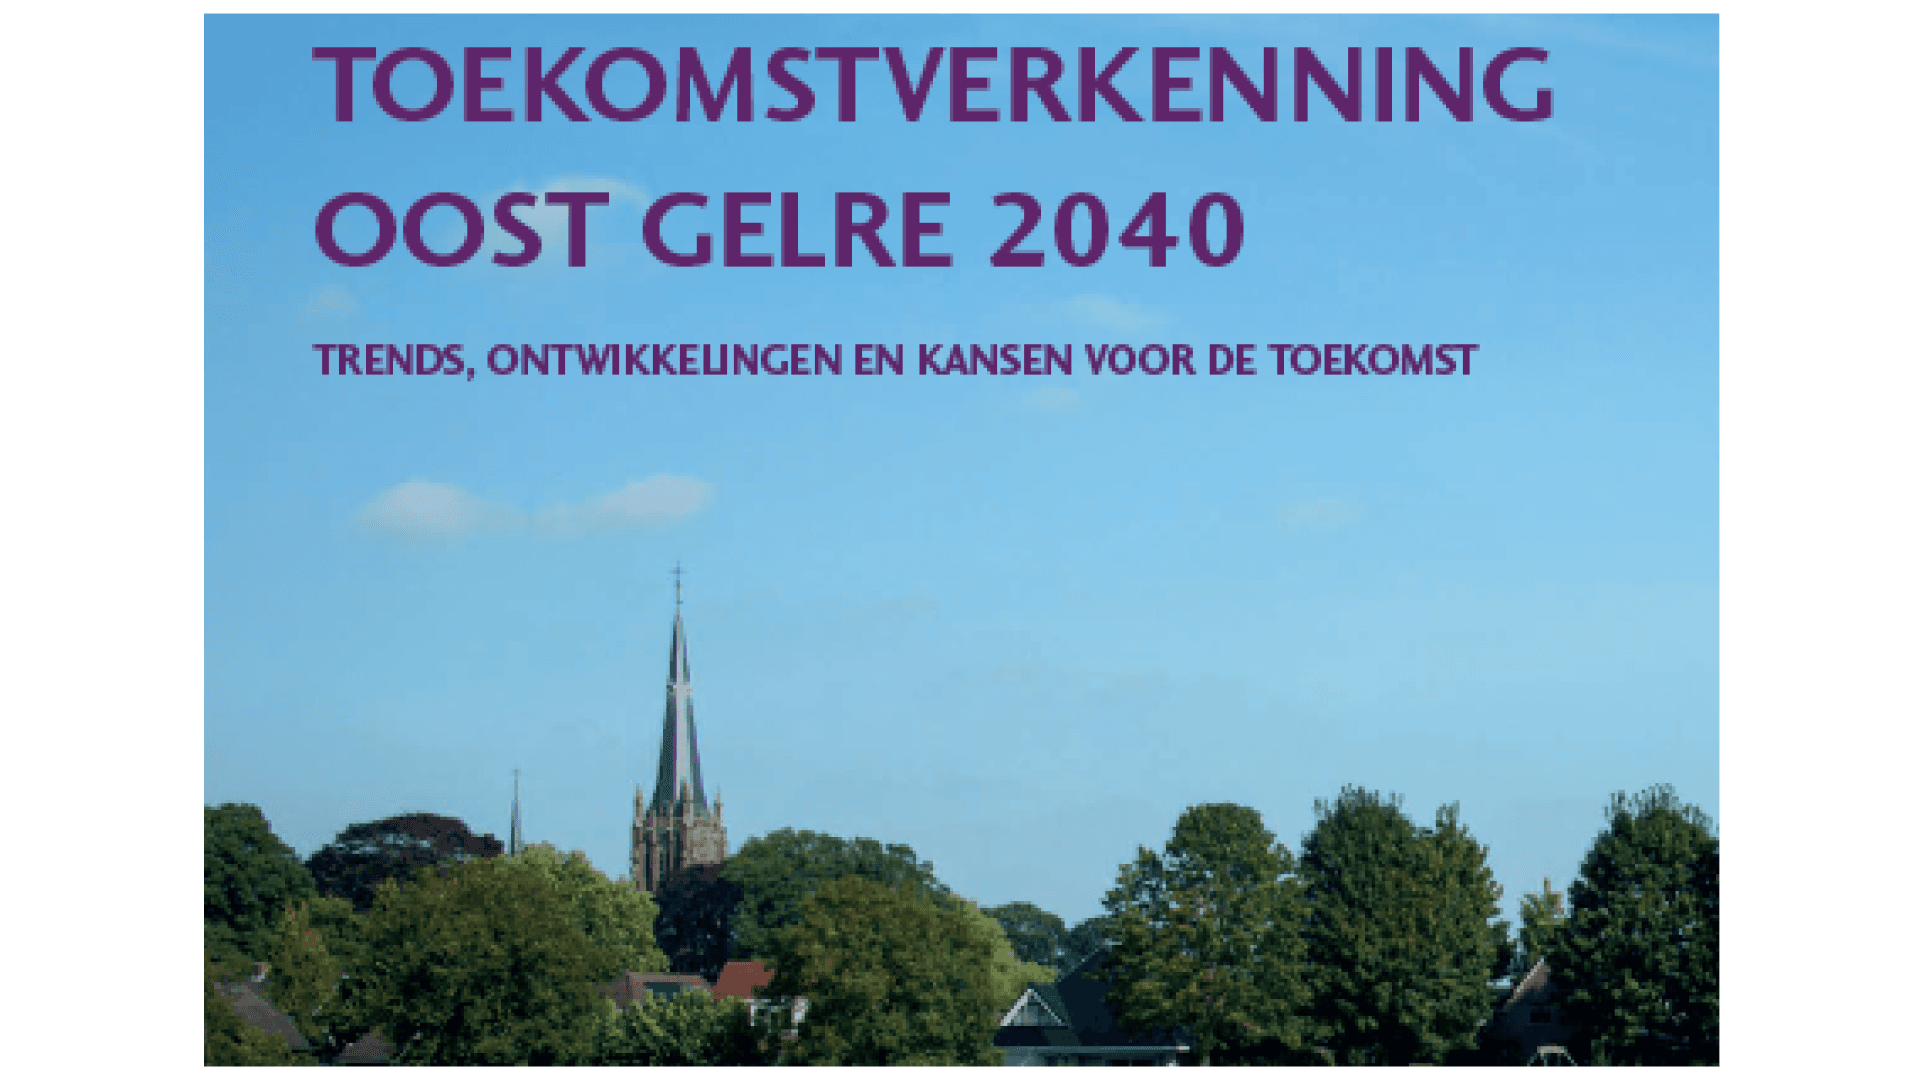 Toekomstverkenning Oost Gelre 2040 Trends, ontwikkelingen en kansen voor de toekomst